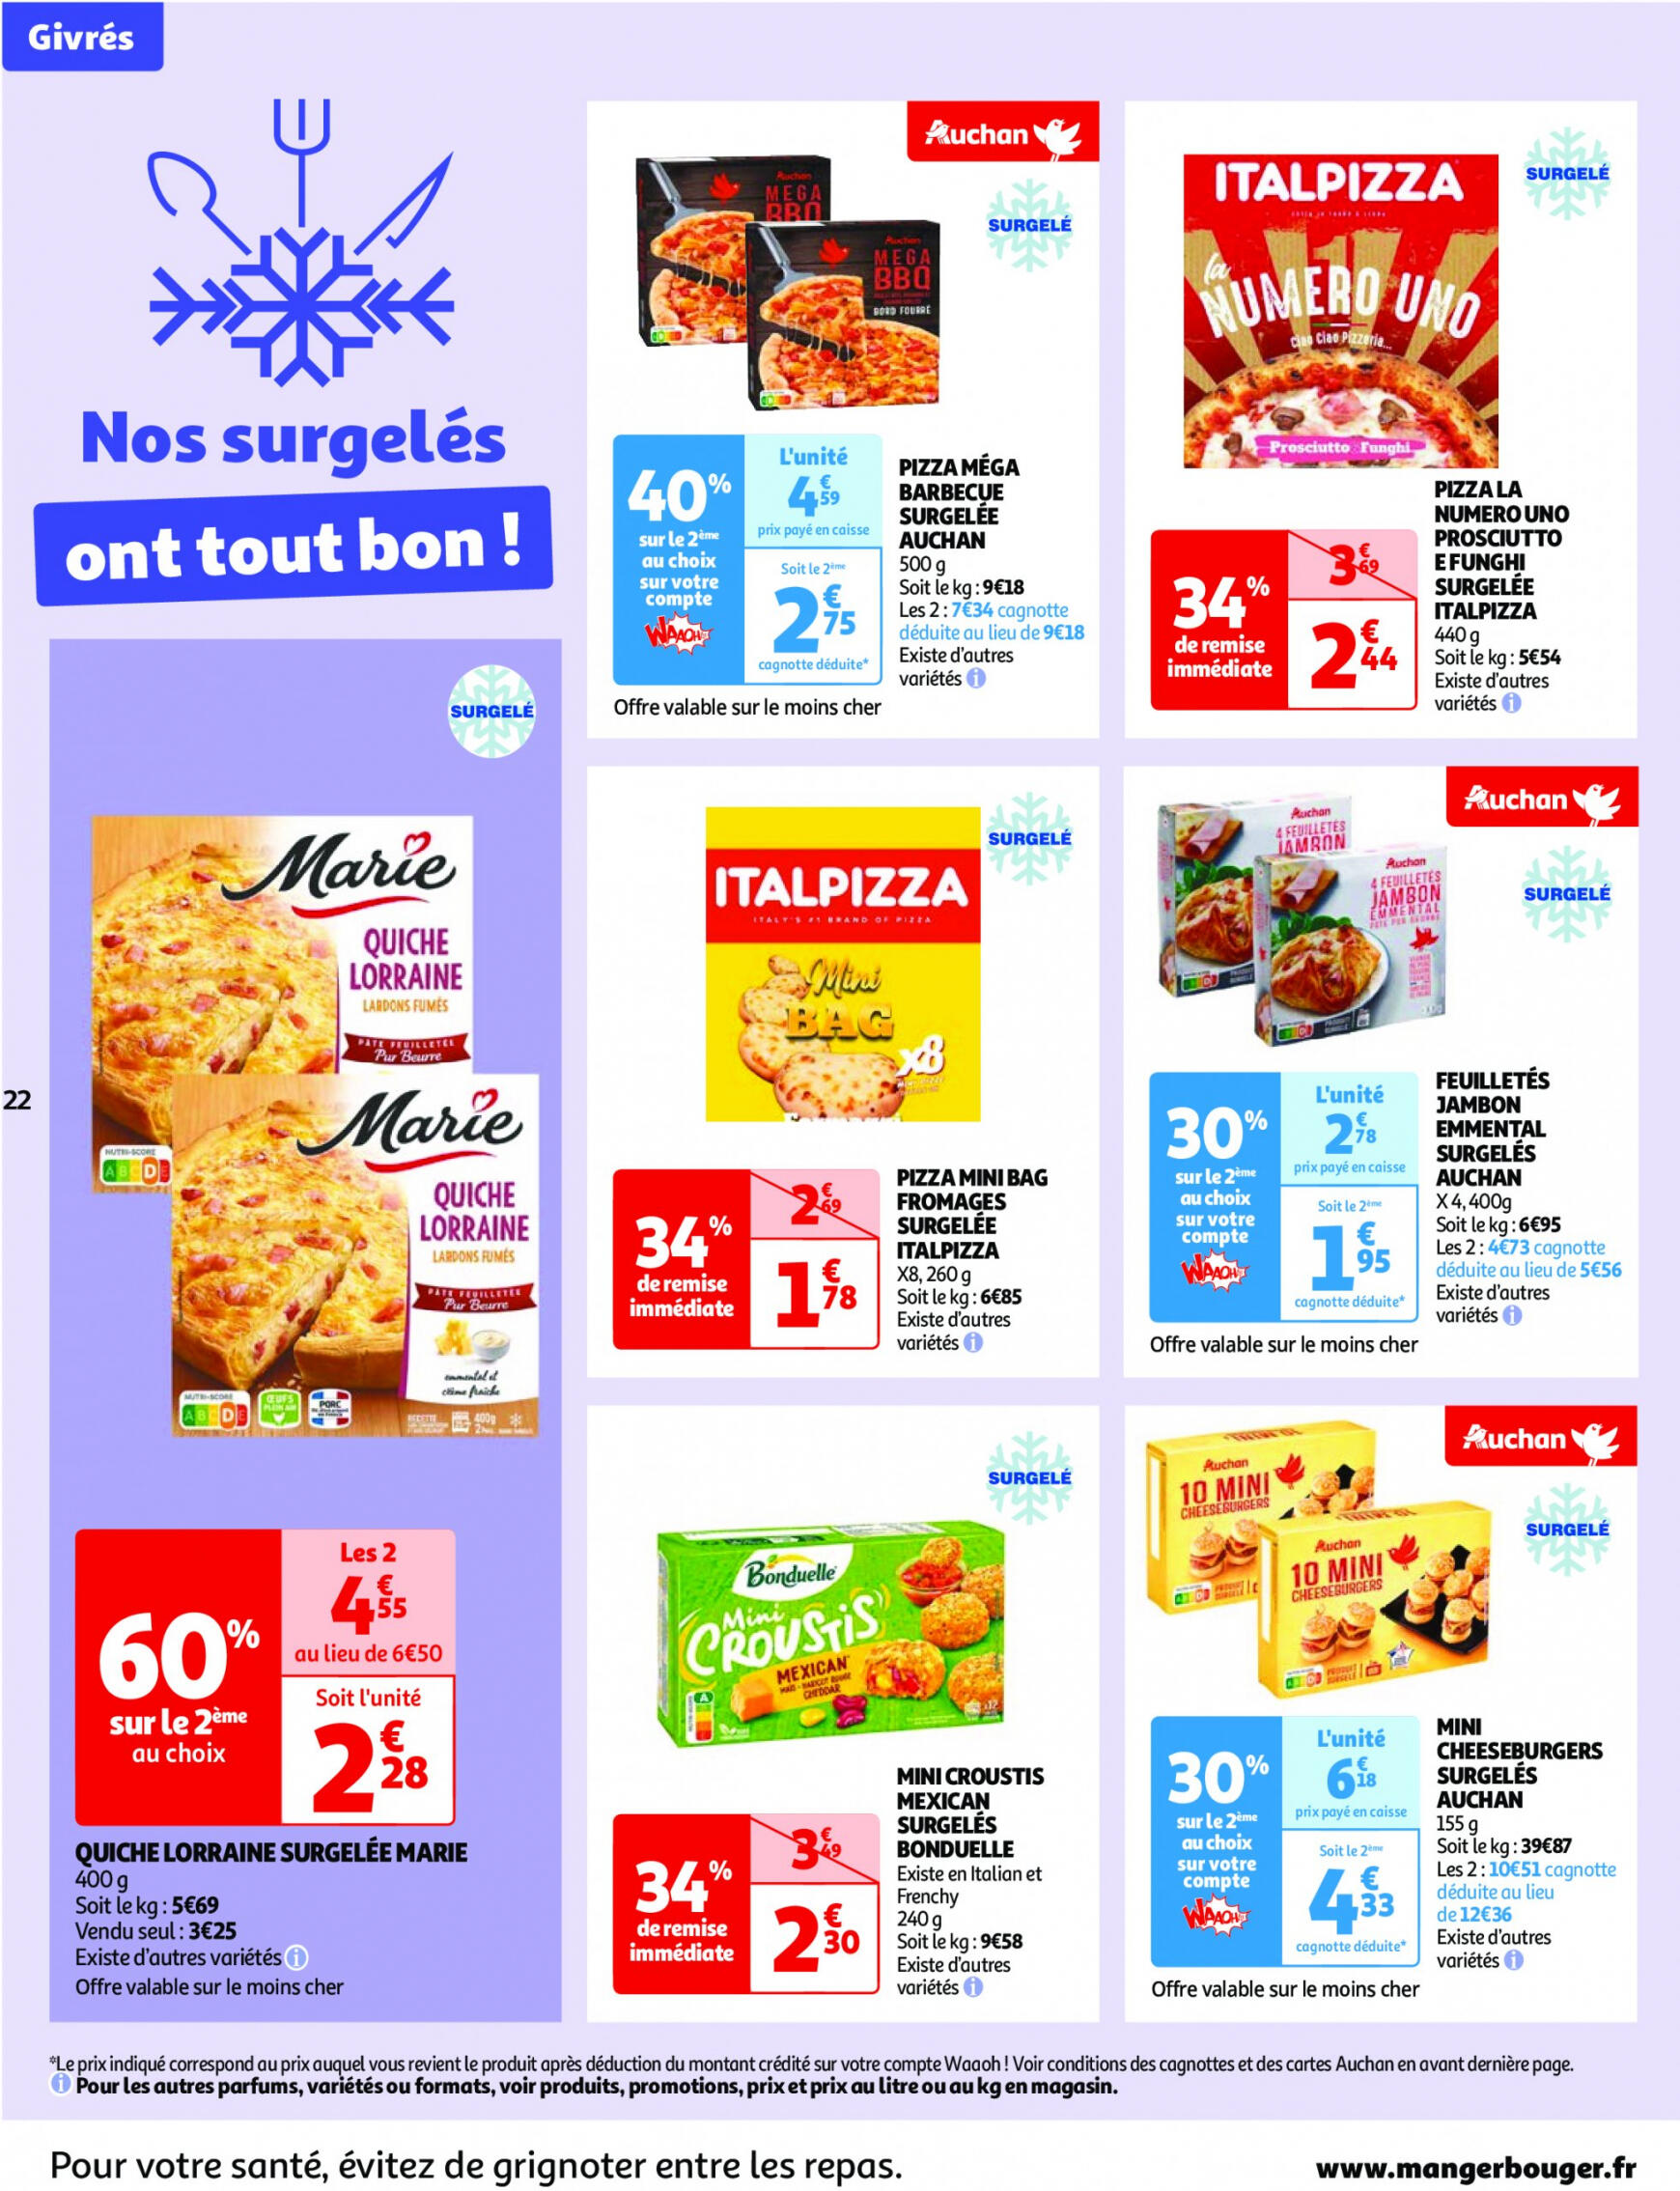 auchan - Prospectus Auchan actuel 14.05. - 21.05. - page: 22